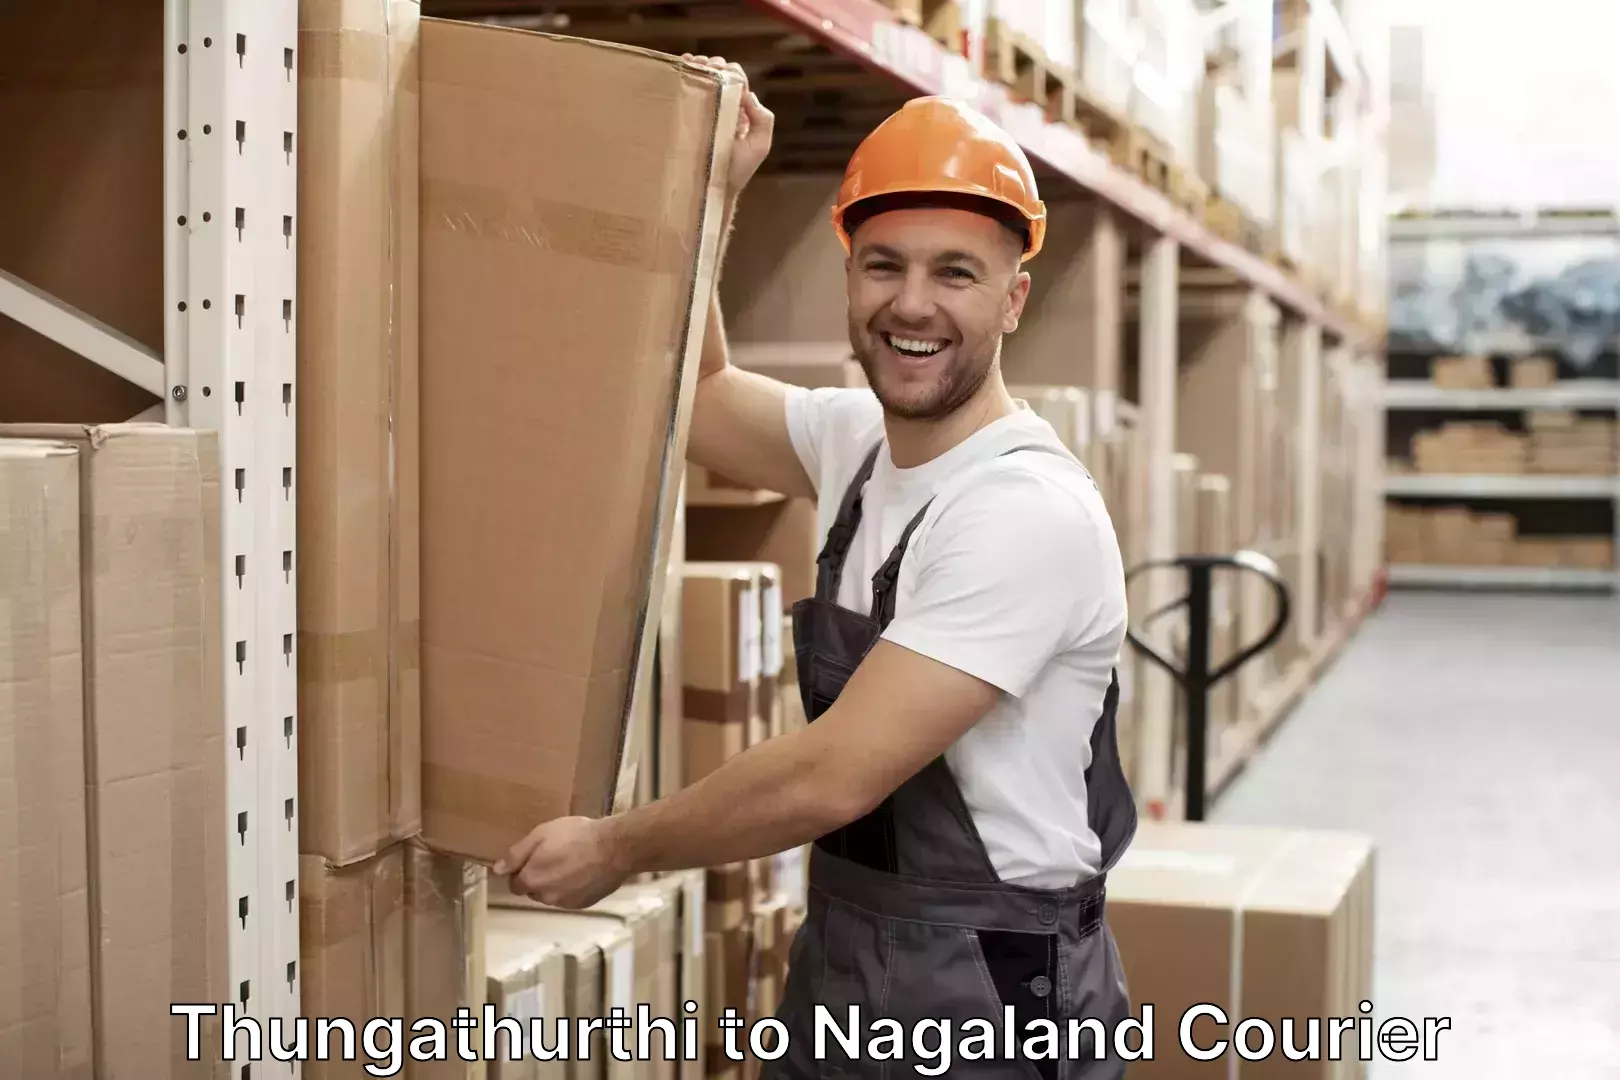 Emergency baggage service Thungathurthi to NIT Nagaland